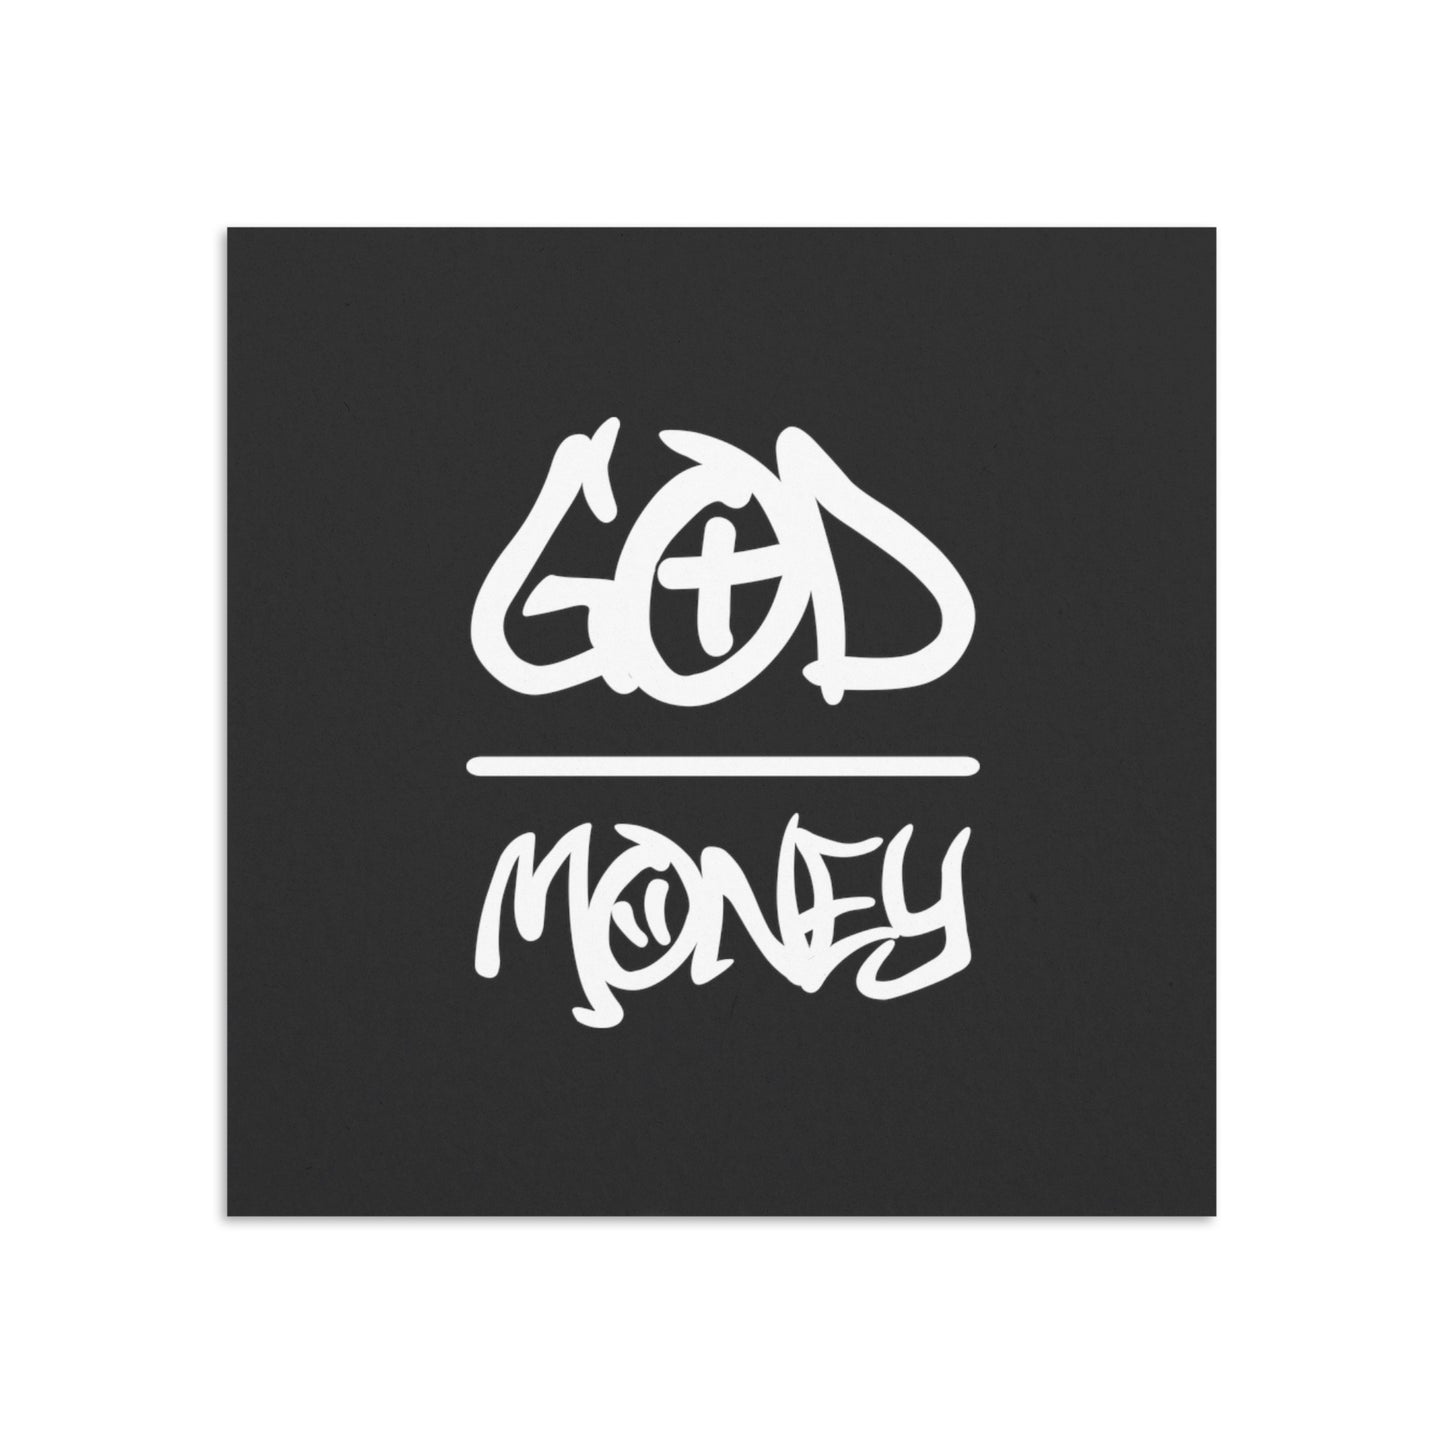 GOD OVER MONEY - VOLCANIC STONE CROSS BRACELET